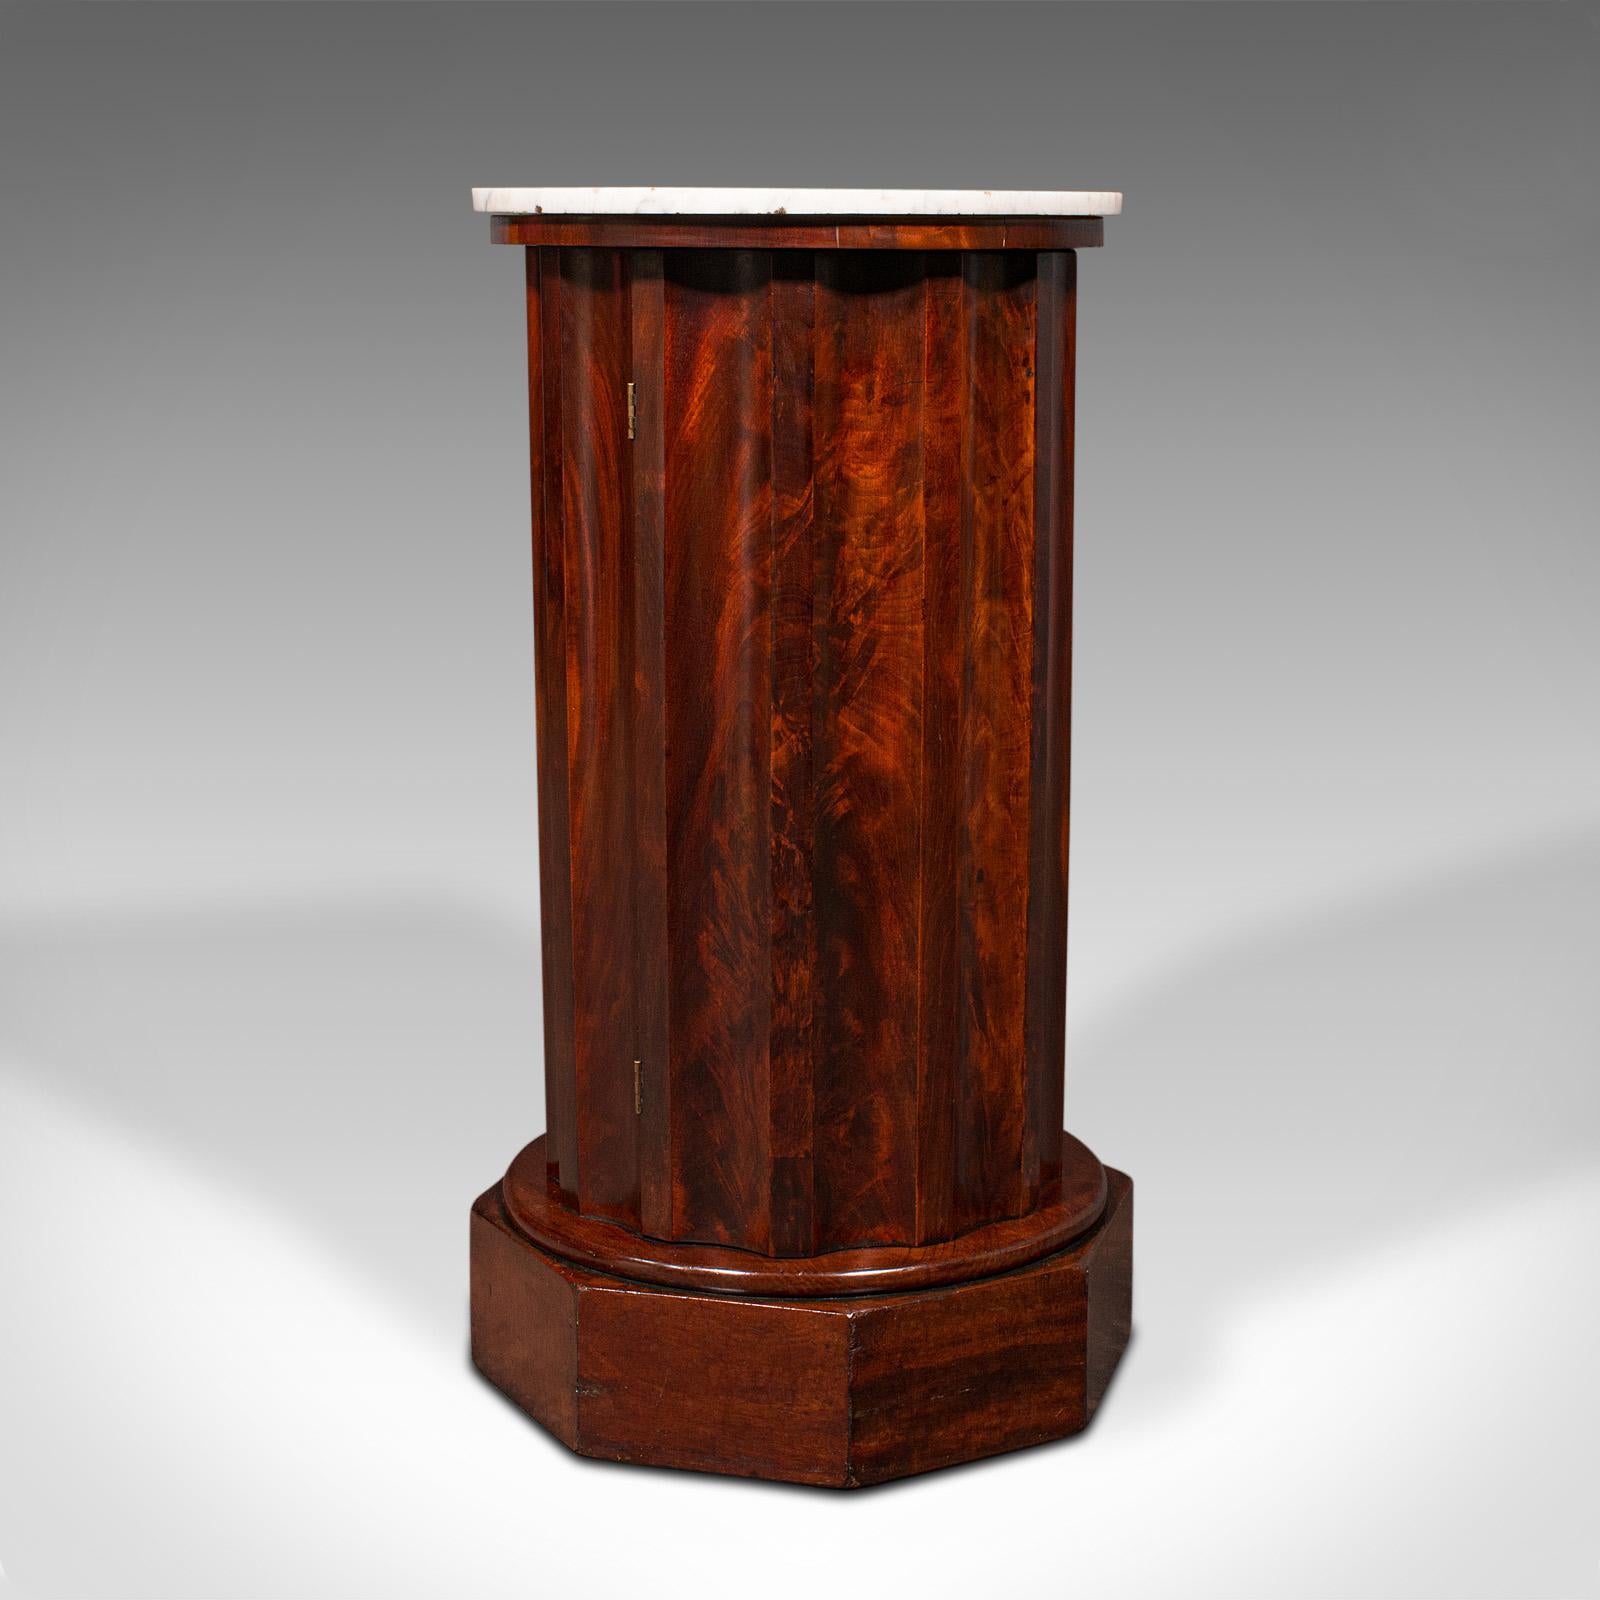 Il s'agit d'un ancien meuble à colonnes. Armoire de chevet anglaise en acajou flammé et marbre, datant du début de la période victorienne, vers 1850.

D'une forme inhabituelle et fascinante, un régal pour le chevet ou le salon.
Présente une